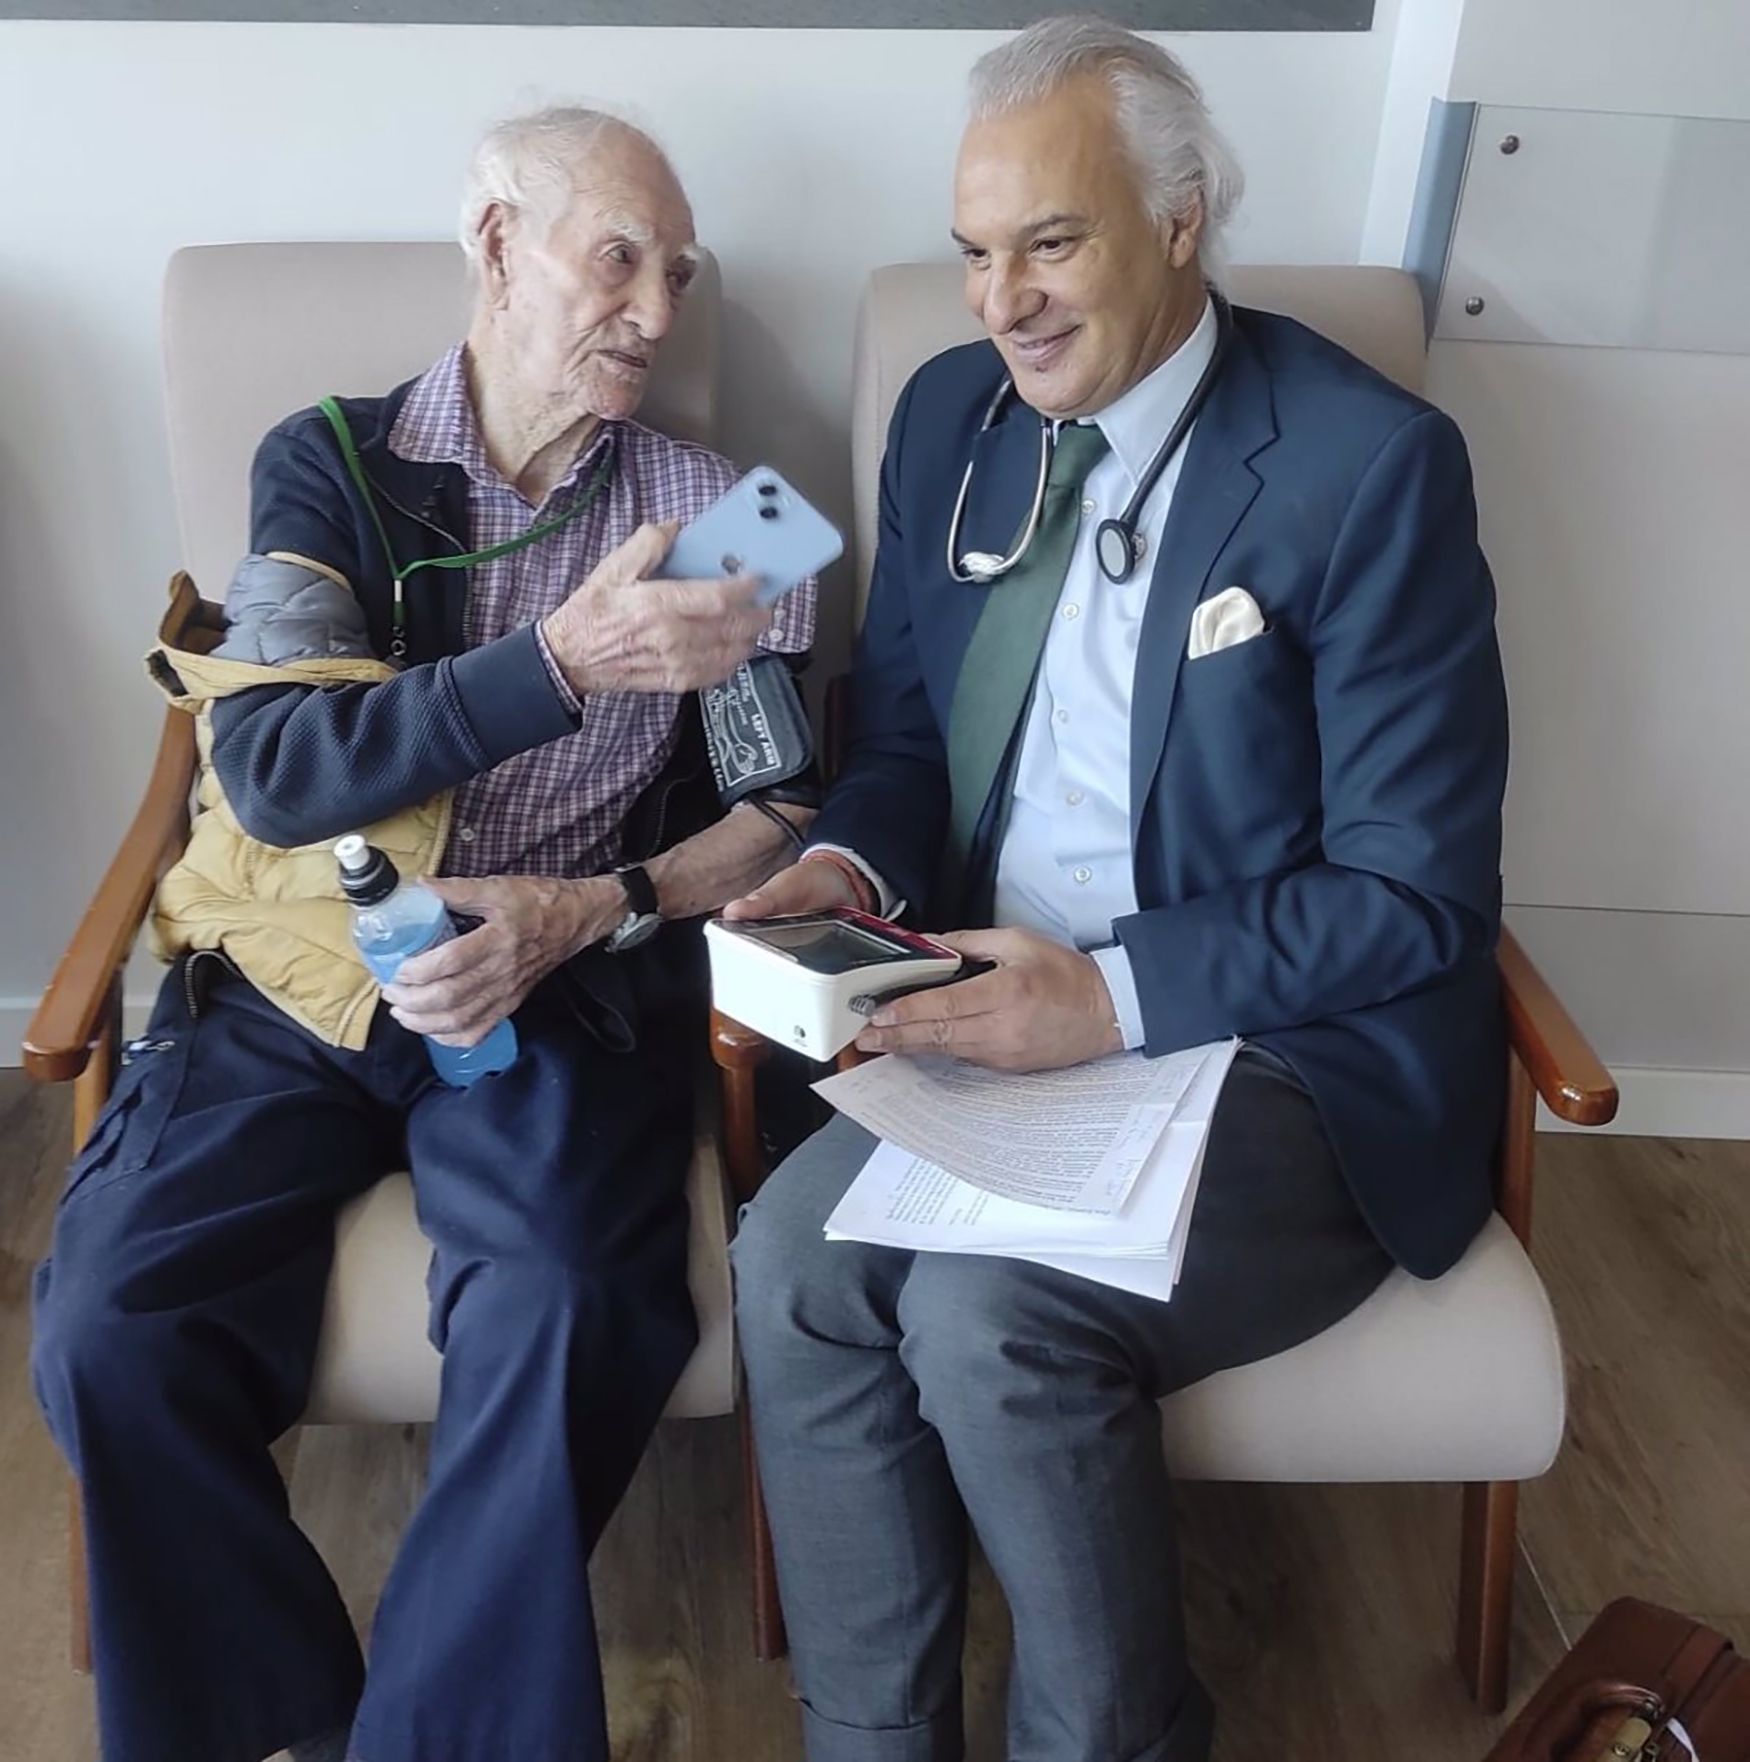 Servando, de 109 años, revela su secreto: "Dieta sana, vino en la comida y caminar una hora al día"